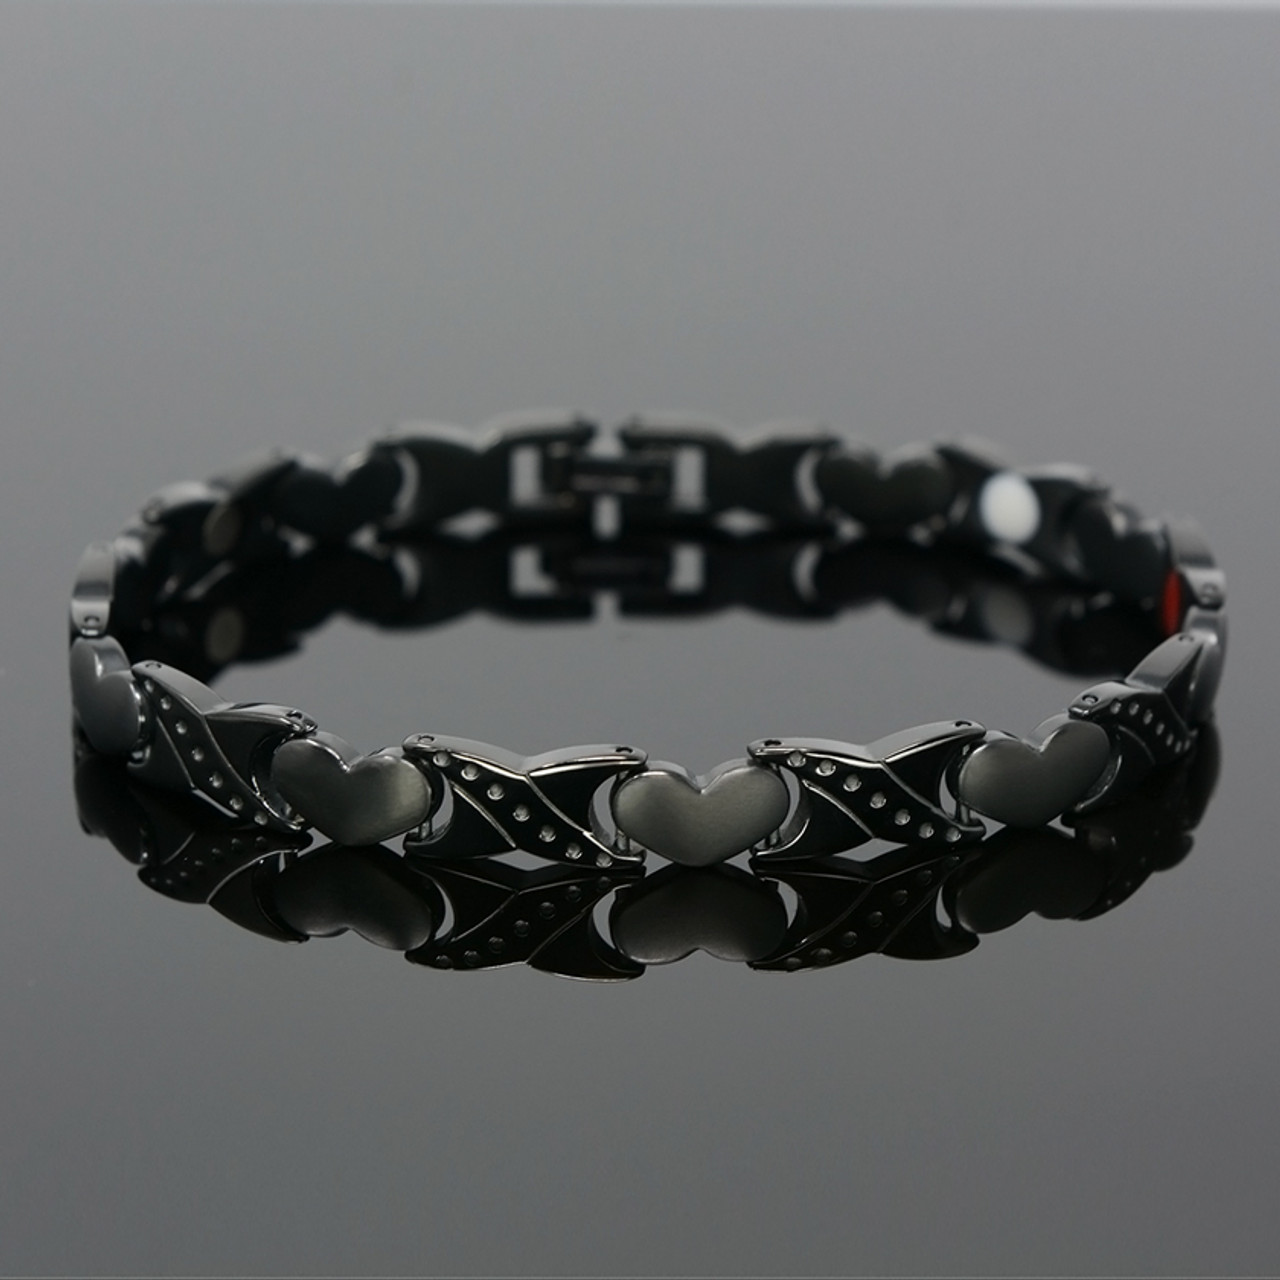 <img src=" womens Black Titanium magnet bracelet .png" alt="Quad-Element Titanium Two-Tone Gloss Black Magnetic Bracelet with Satin Accents - 12,800 Gauss B428QD       ">